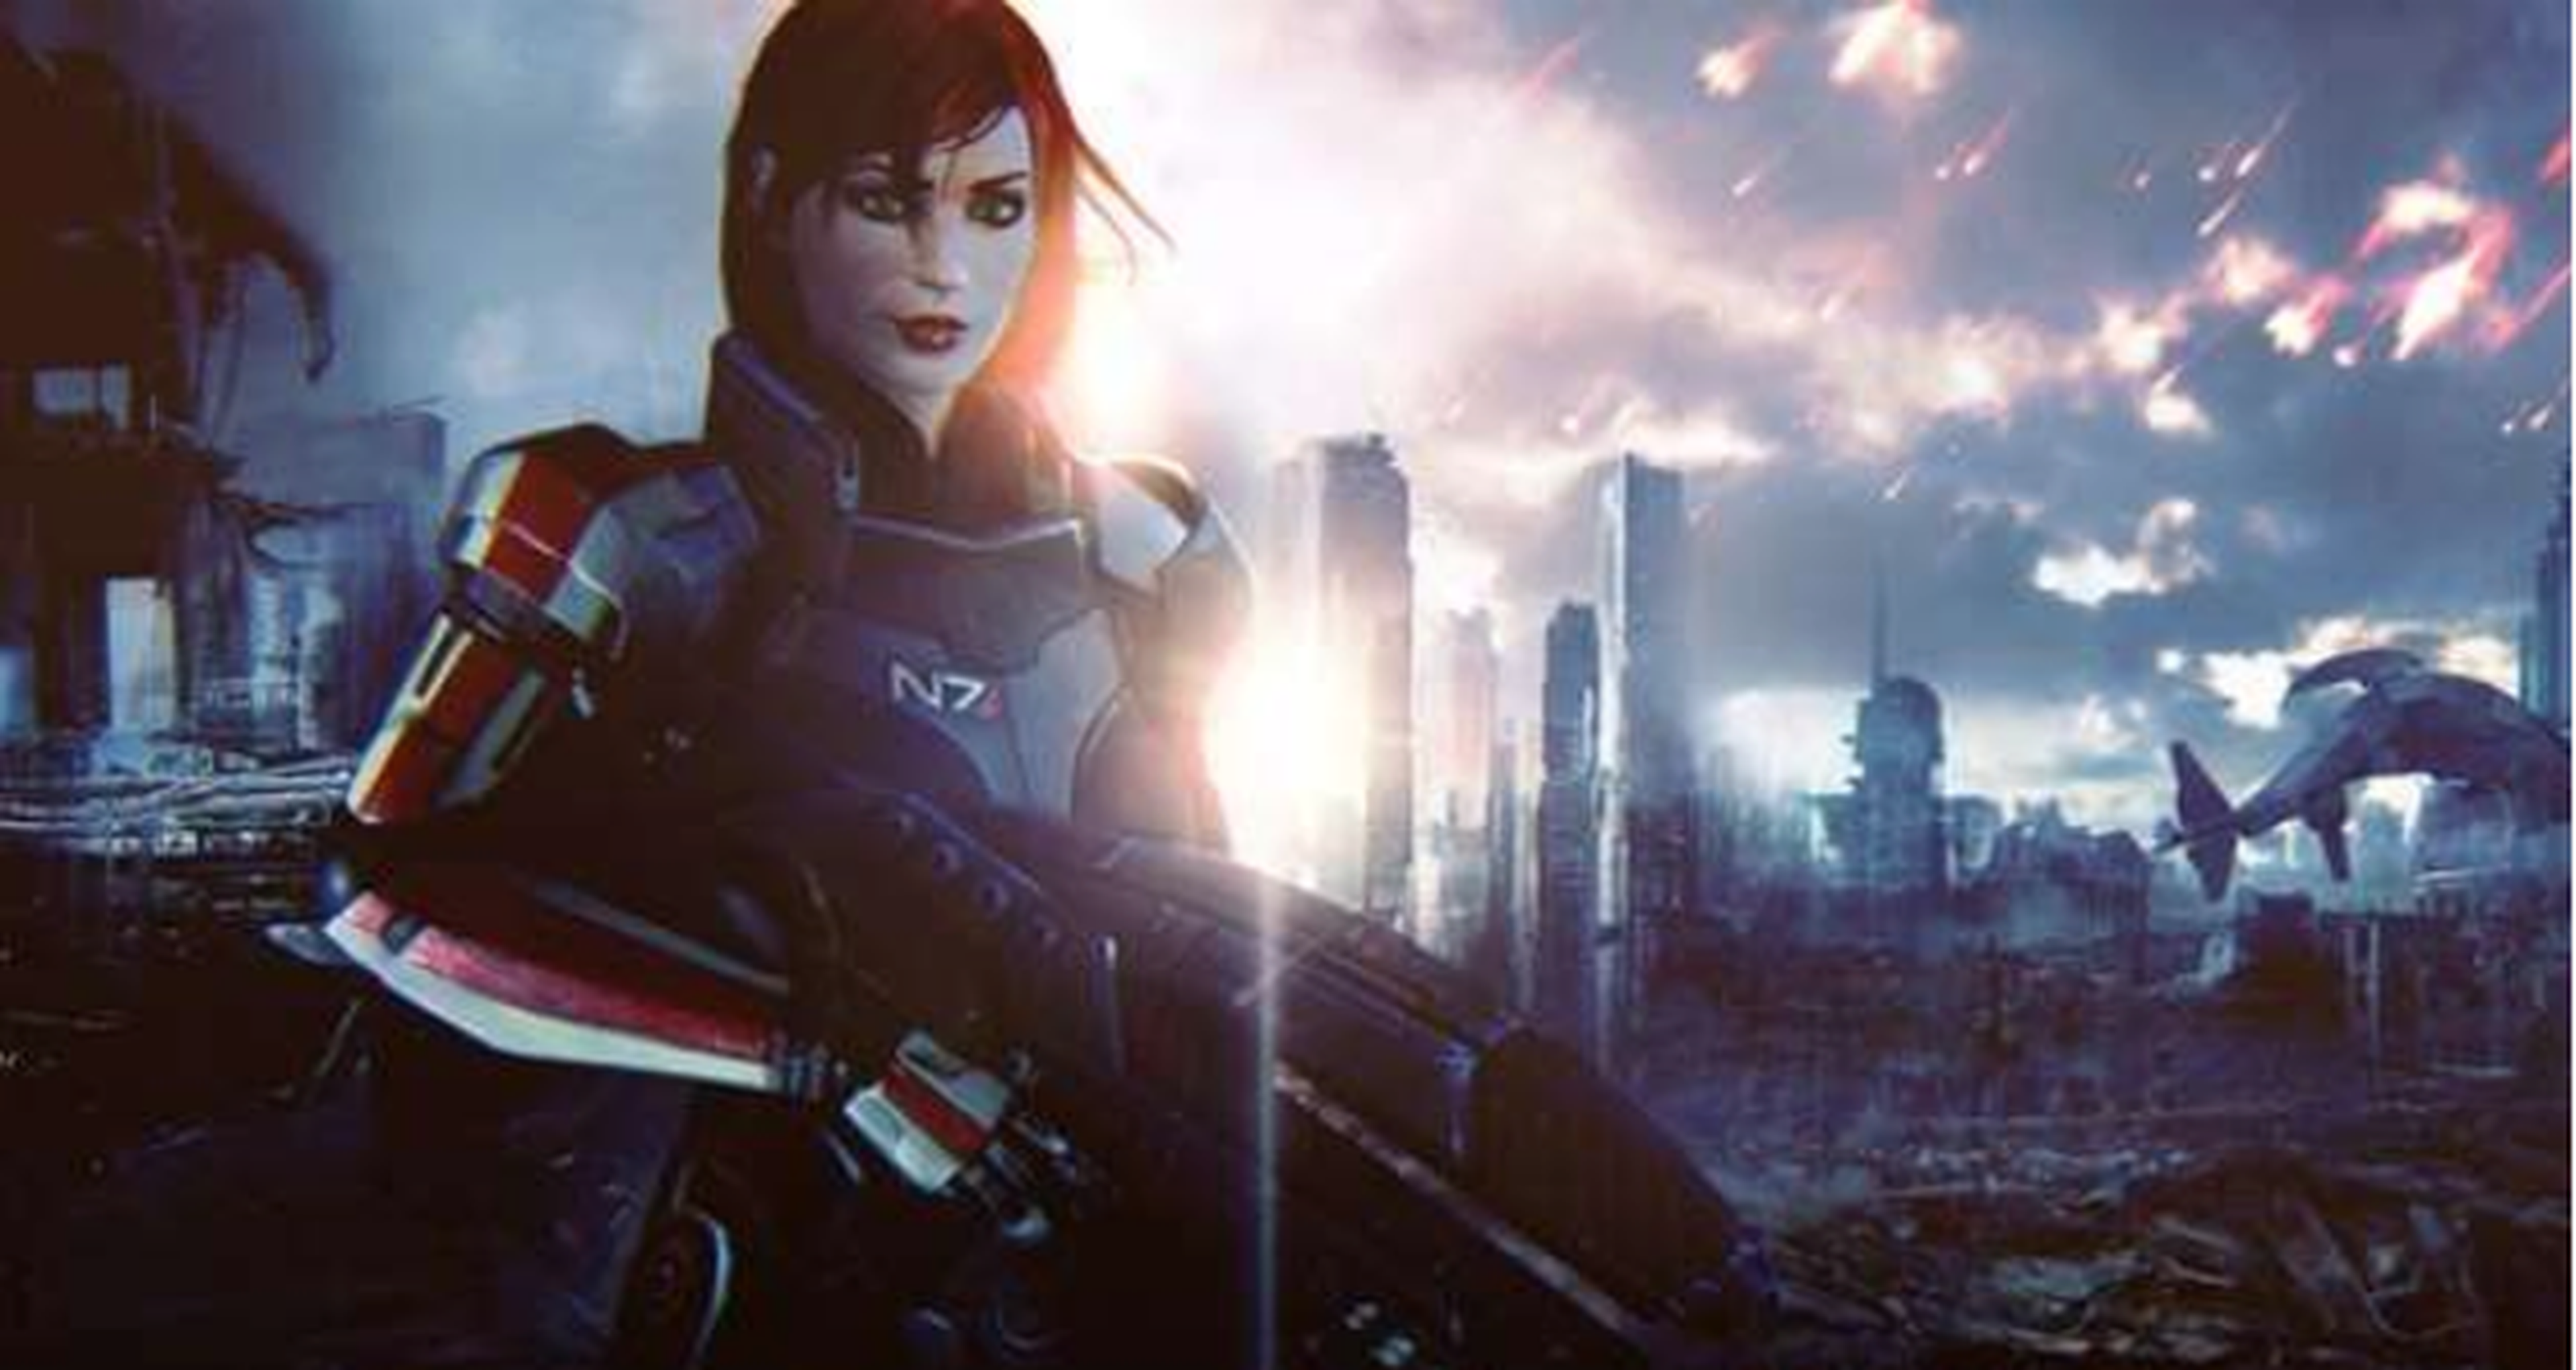 Mass Effect ha de ir más allá de la raza y los estereotipos